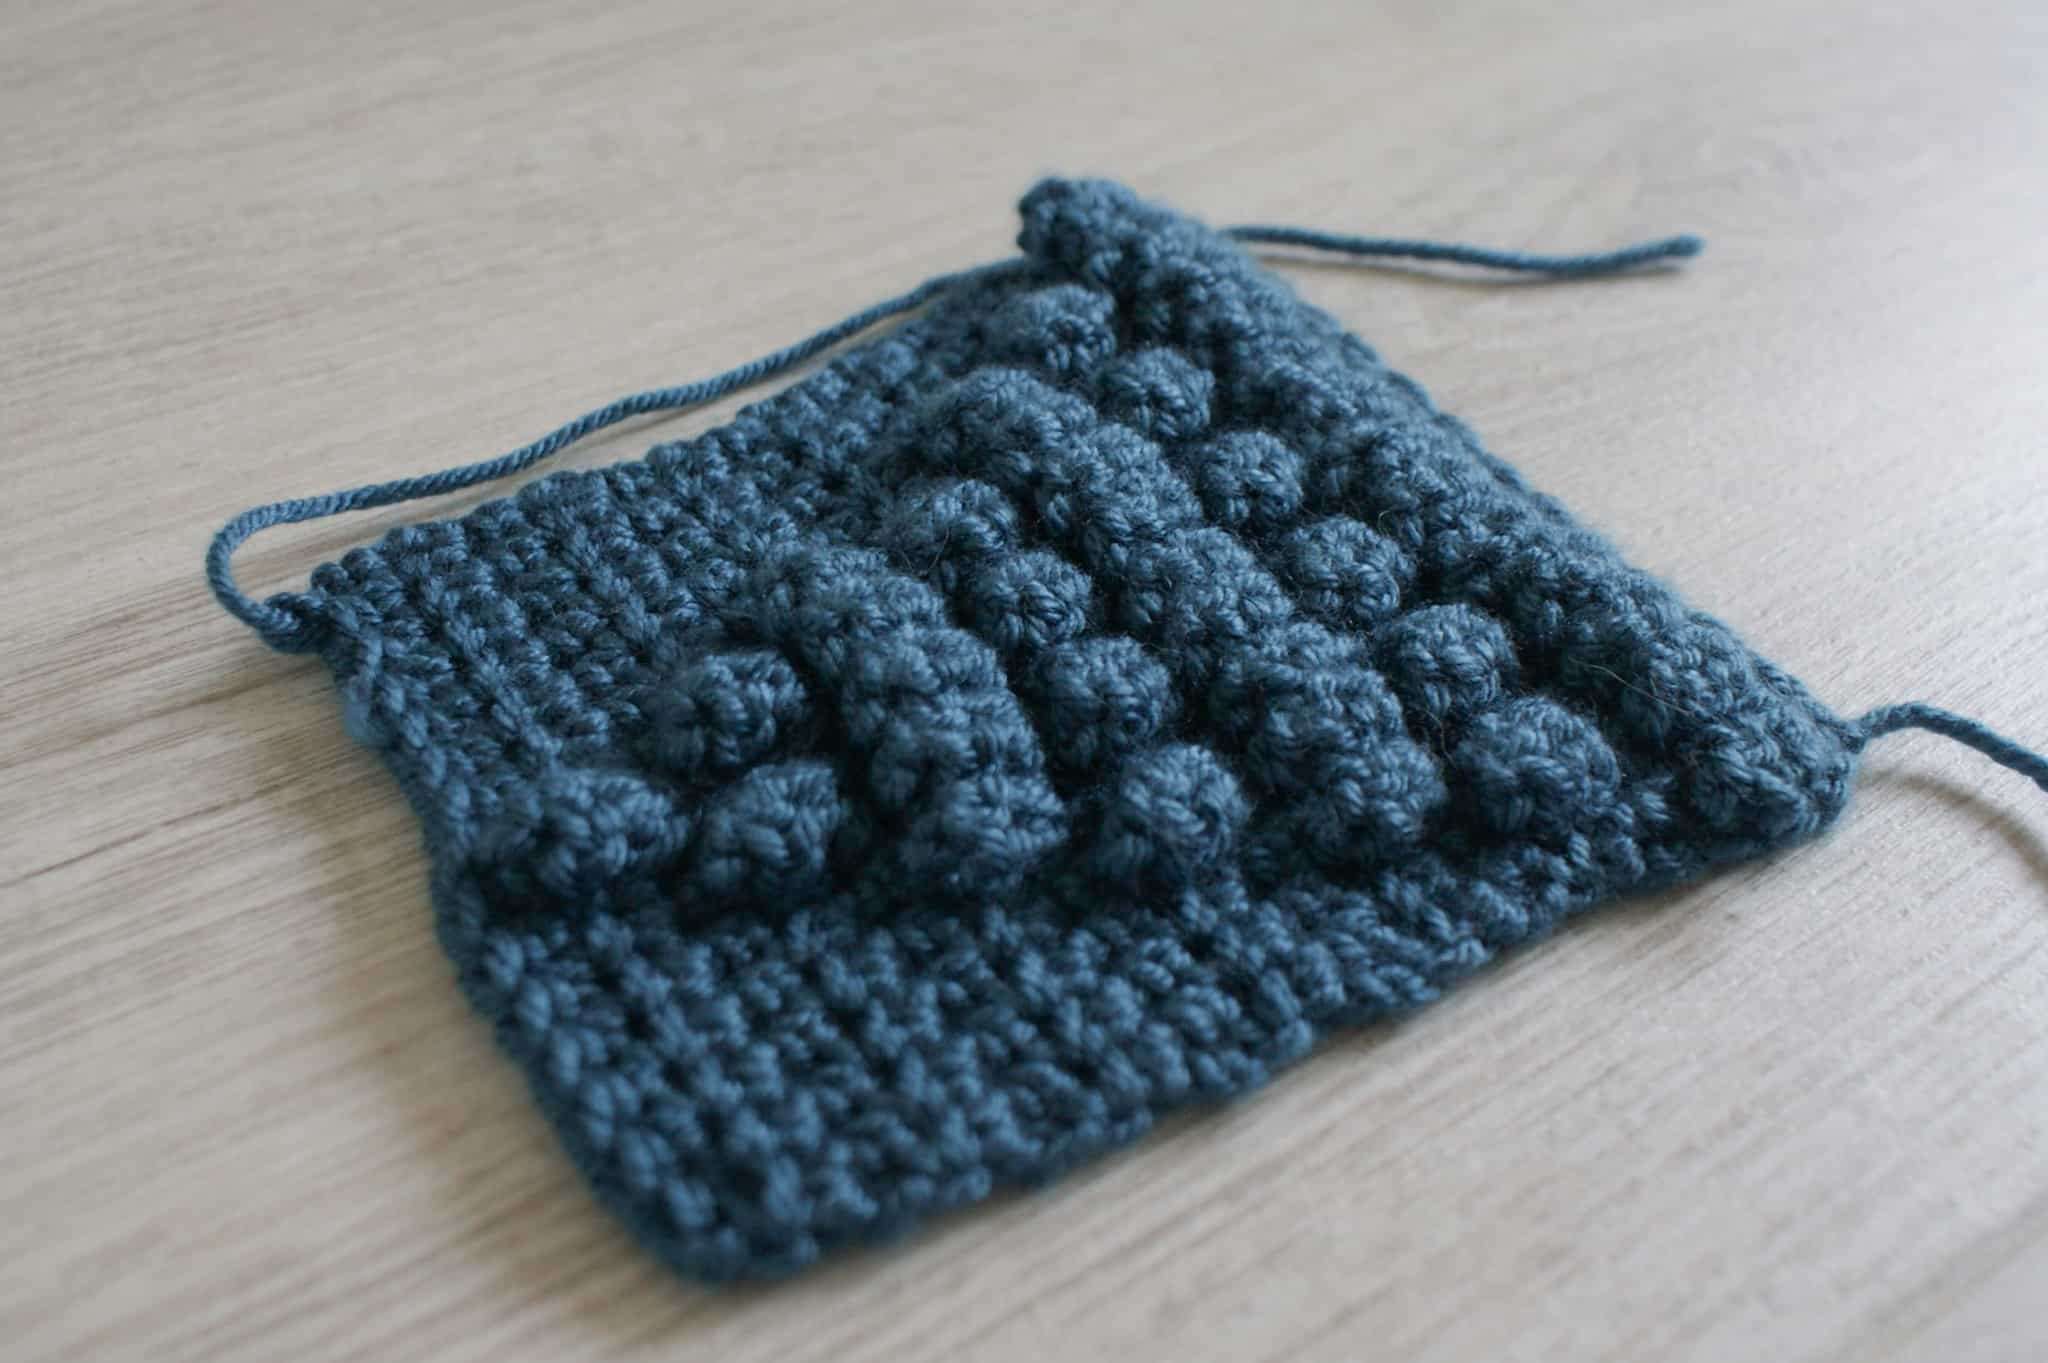 Bubble Stitch In Crochet
